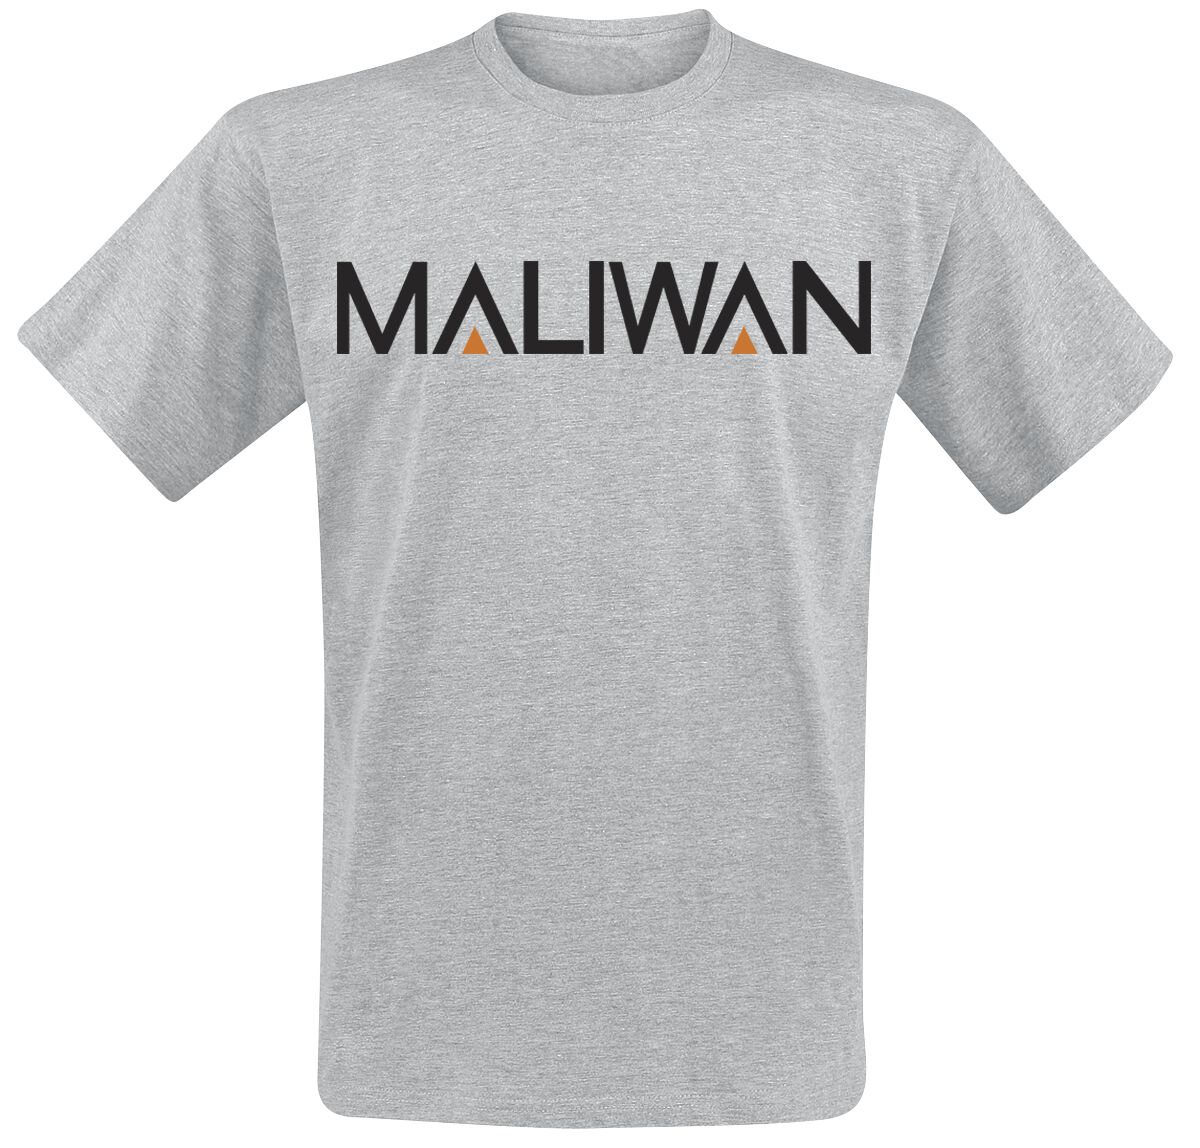 Borderlands - Gaming T-Shirt - 3 - Maliwan - S bis XXL - für Männer - Größe M - grau meliert  - EMP exklusives Merchandise!